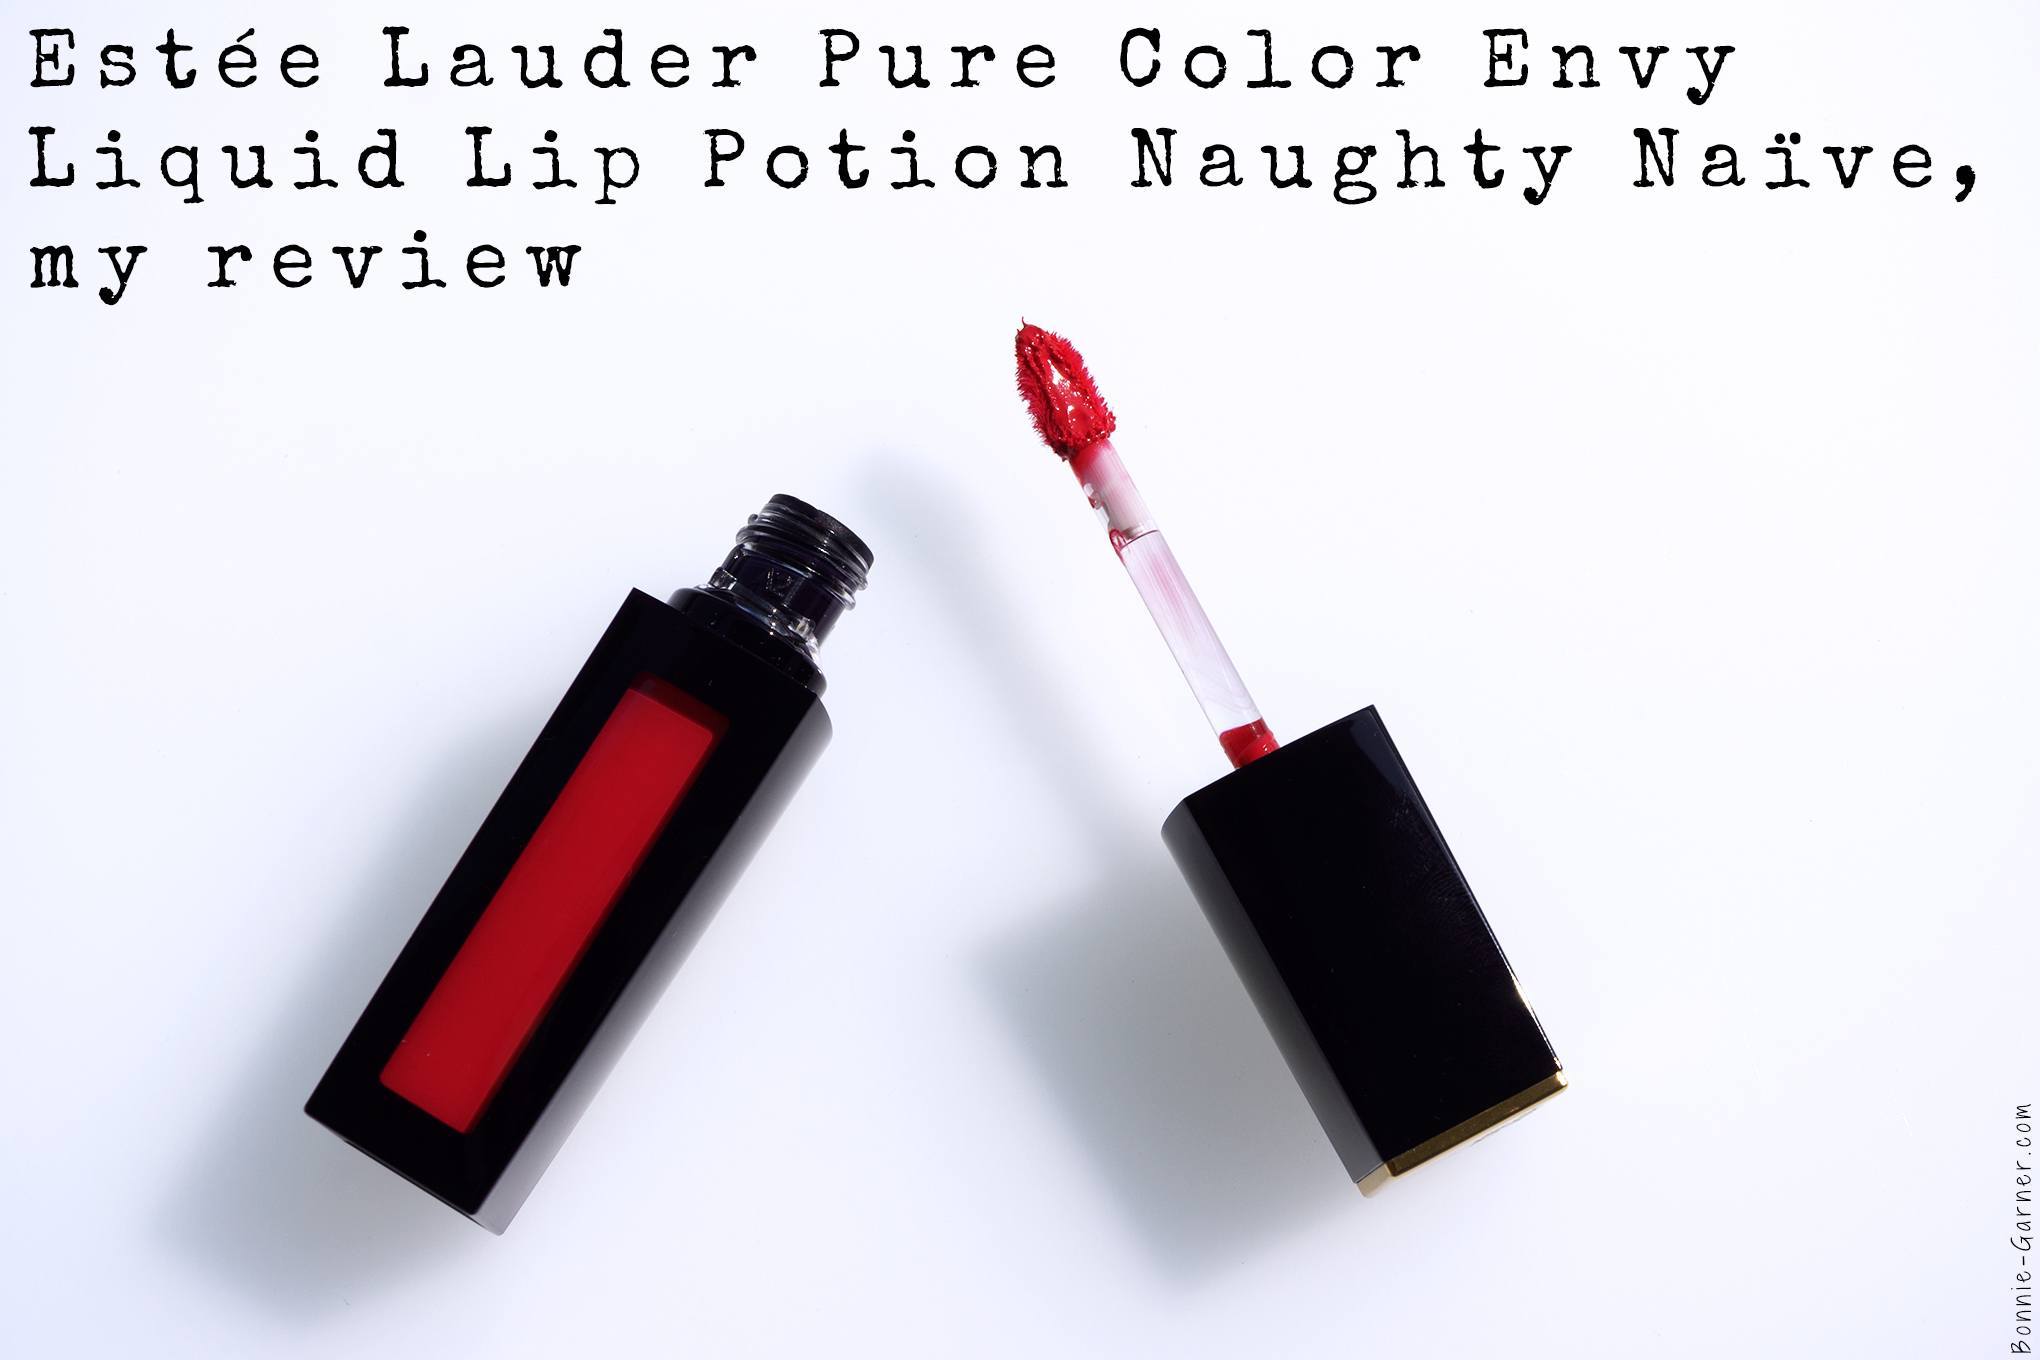 Estée Lauder Pure Color Envy Liquid Lip Potion Naughty Naïve, my review